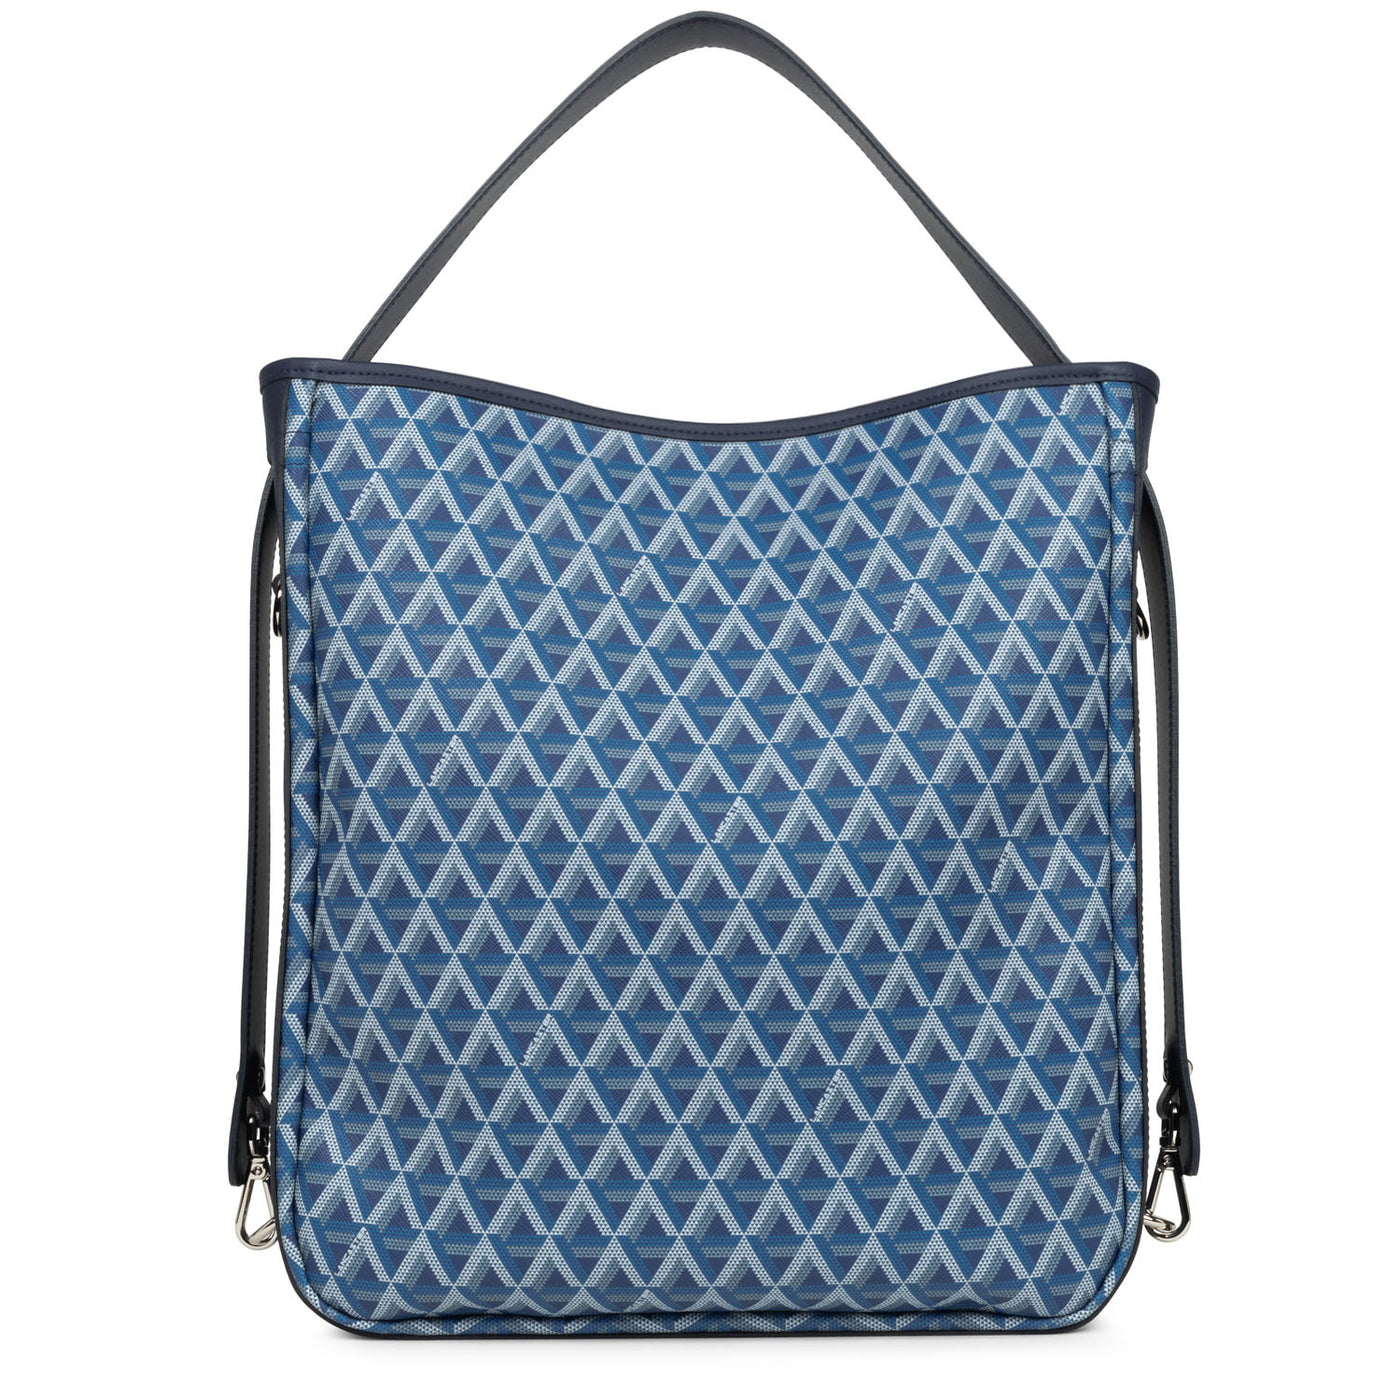 grand sac seau - ikon #couleur_bleu-lectrique